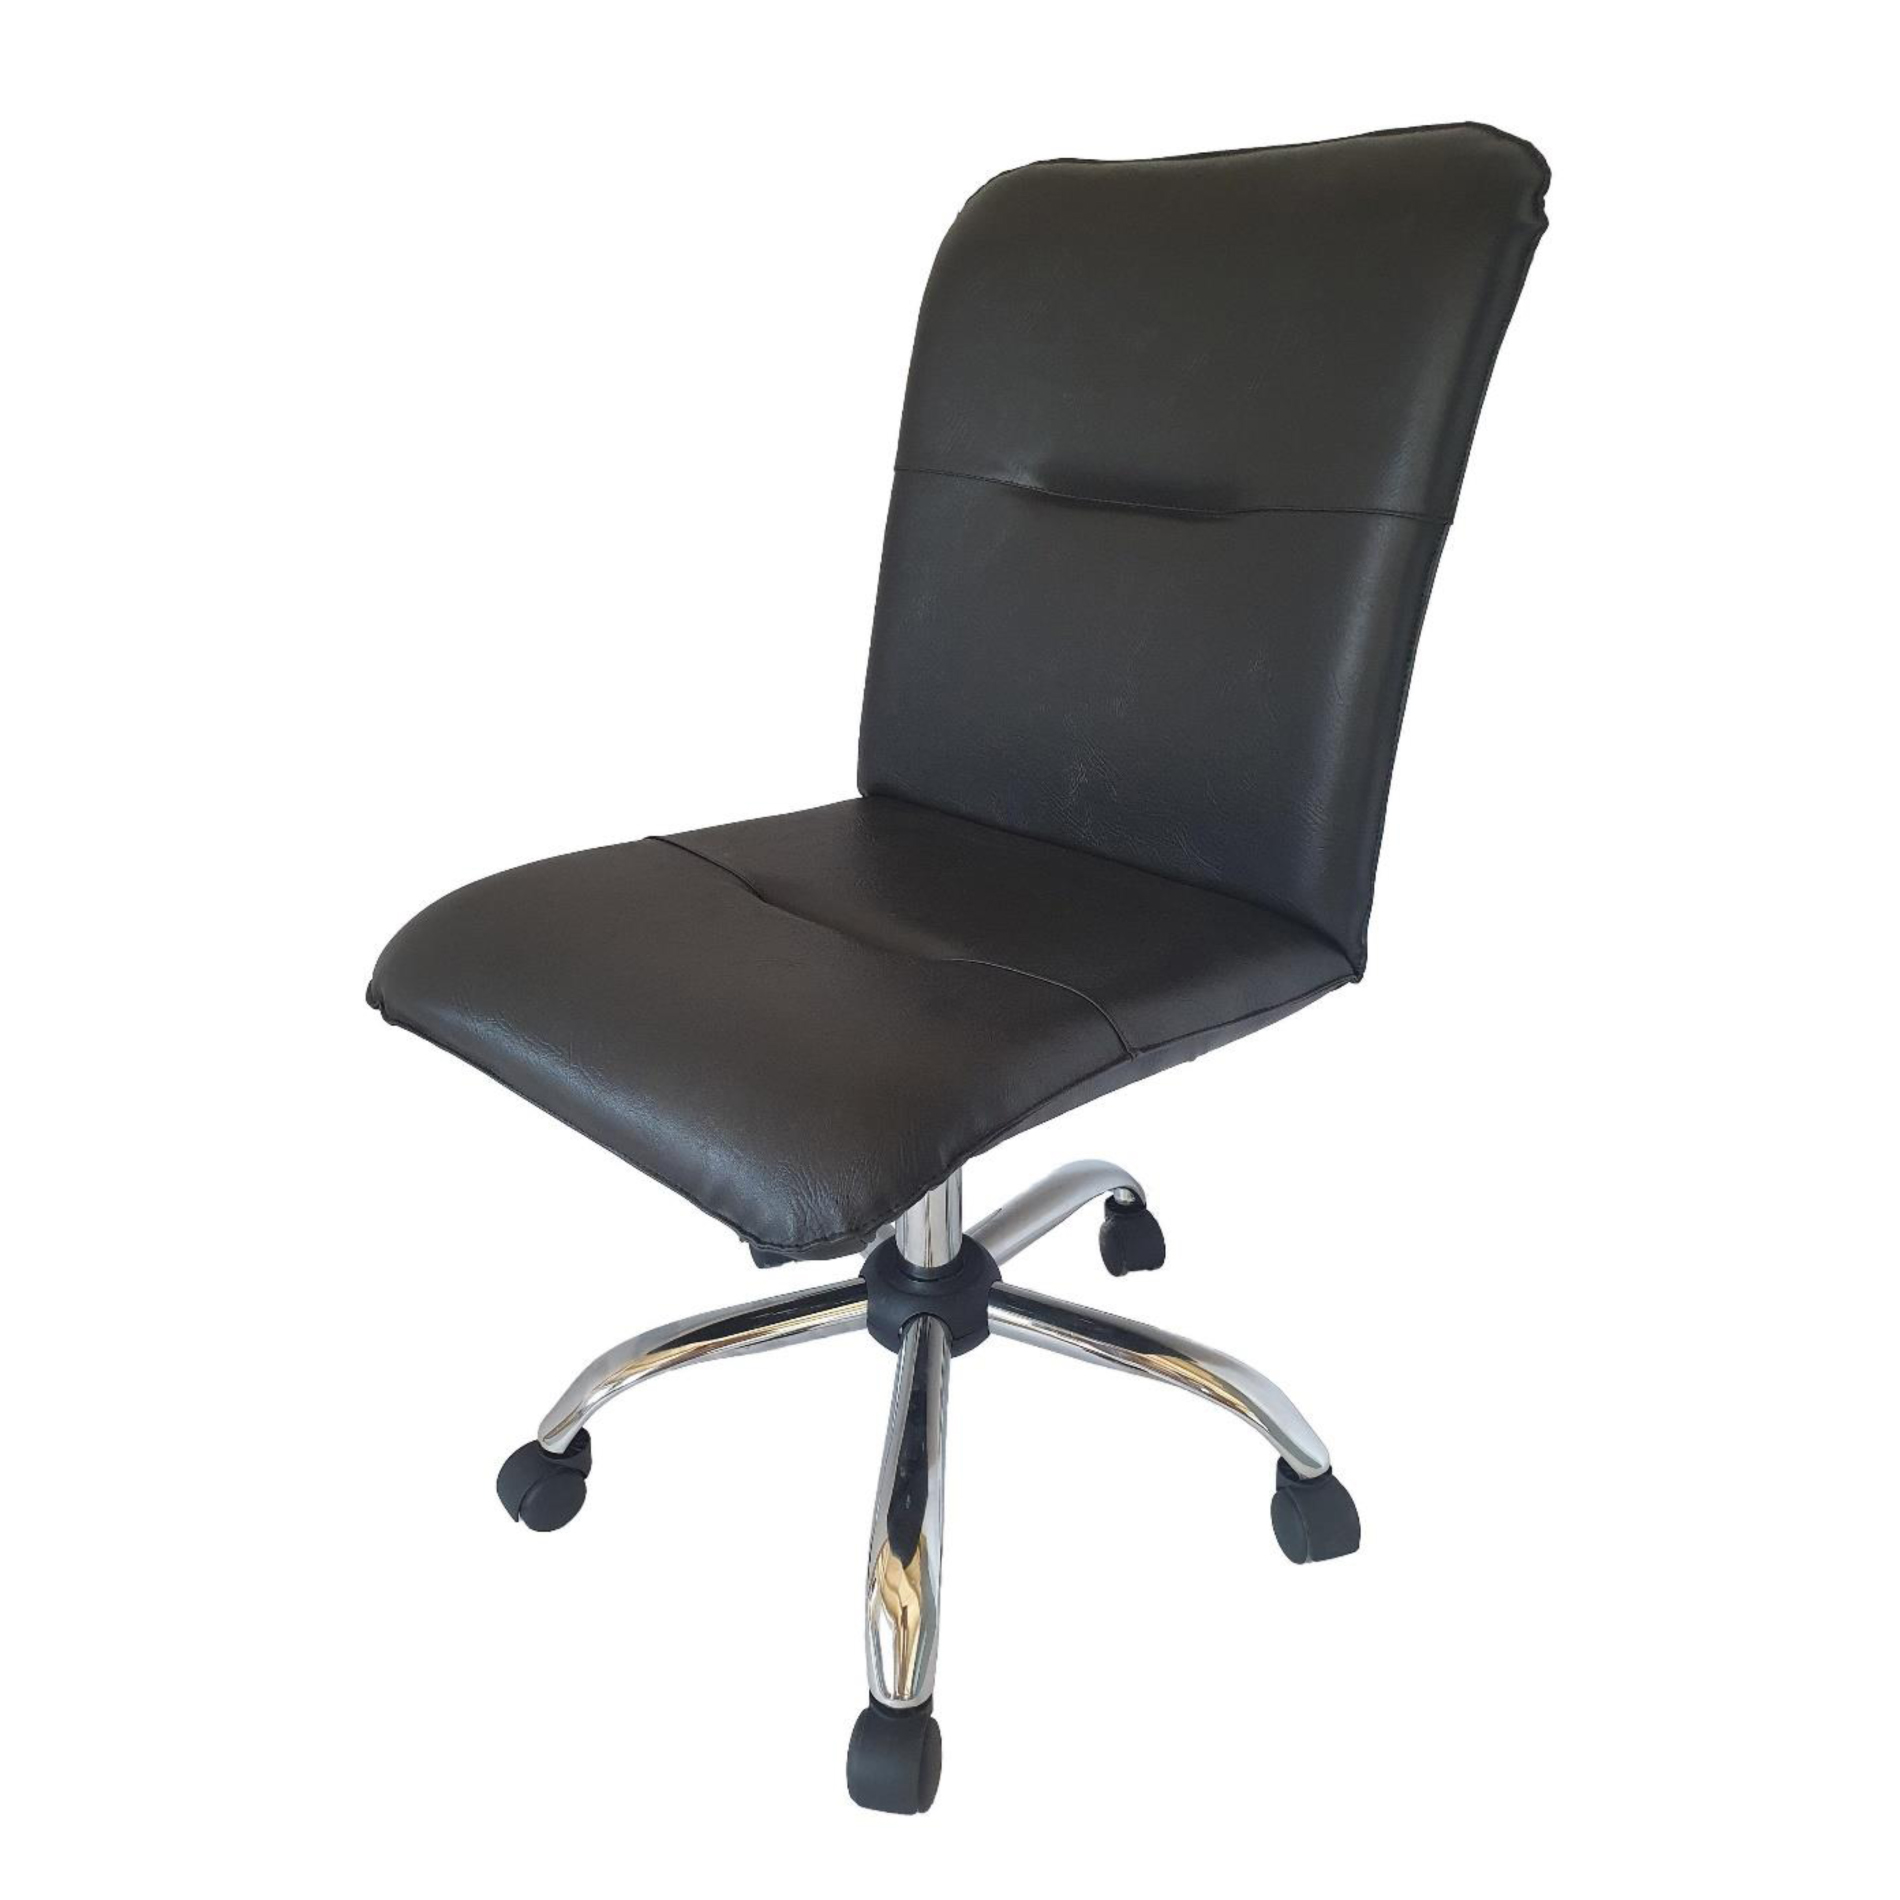 Кресло Samba-ARM-LG без подлокотников